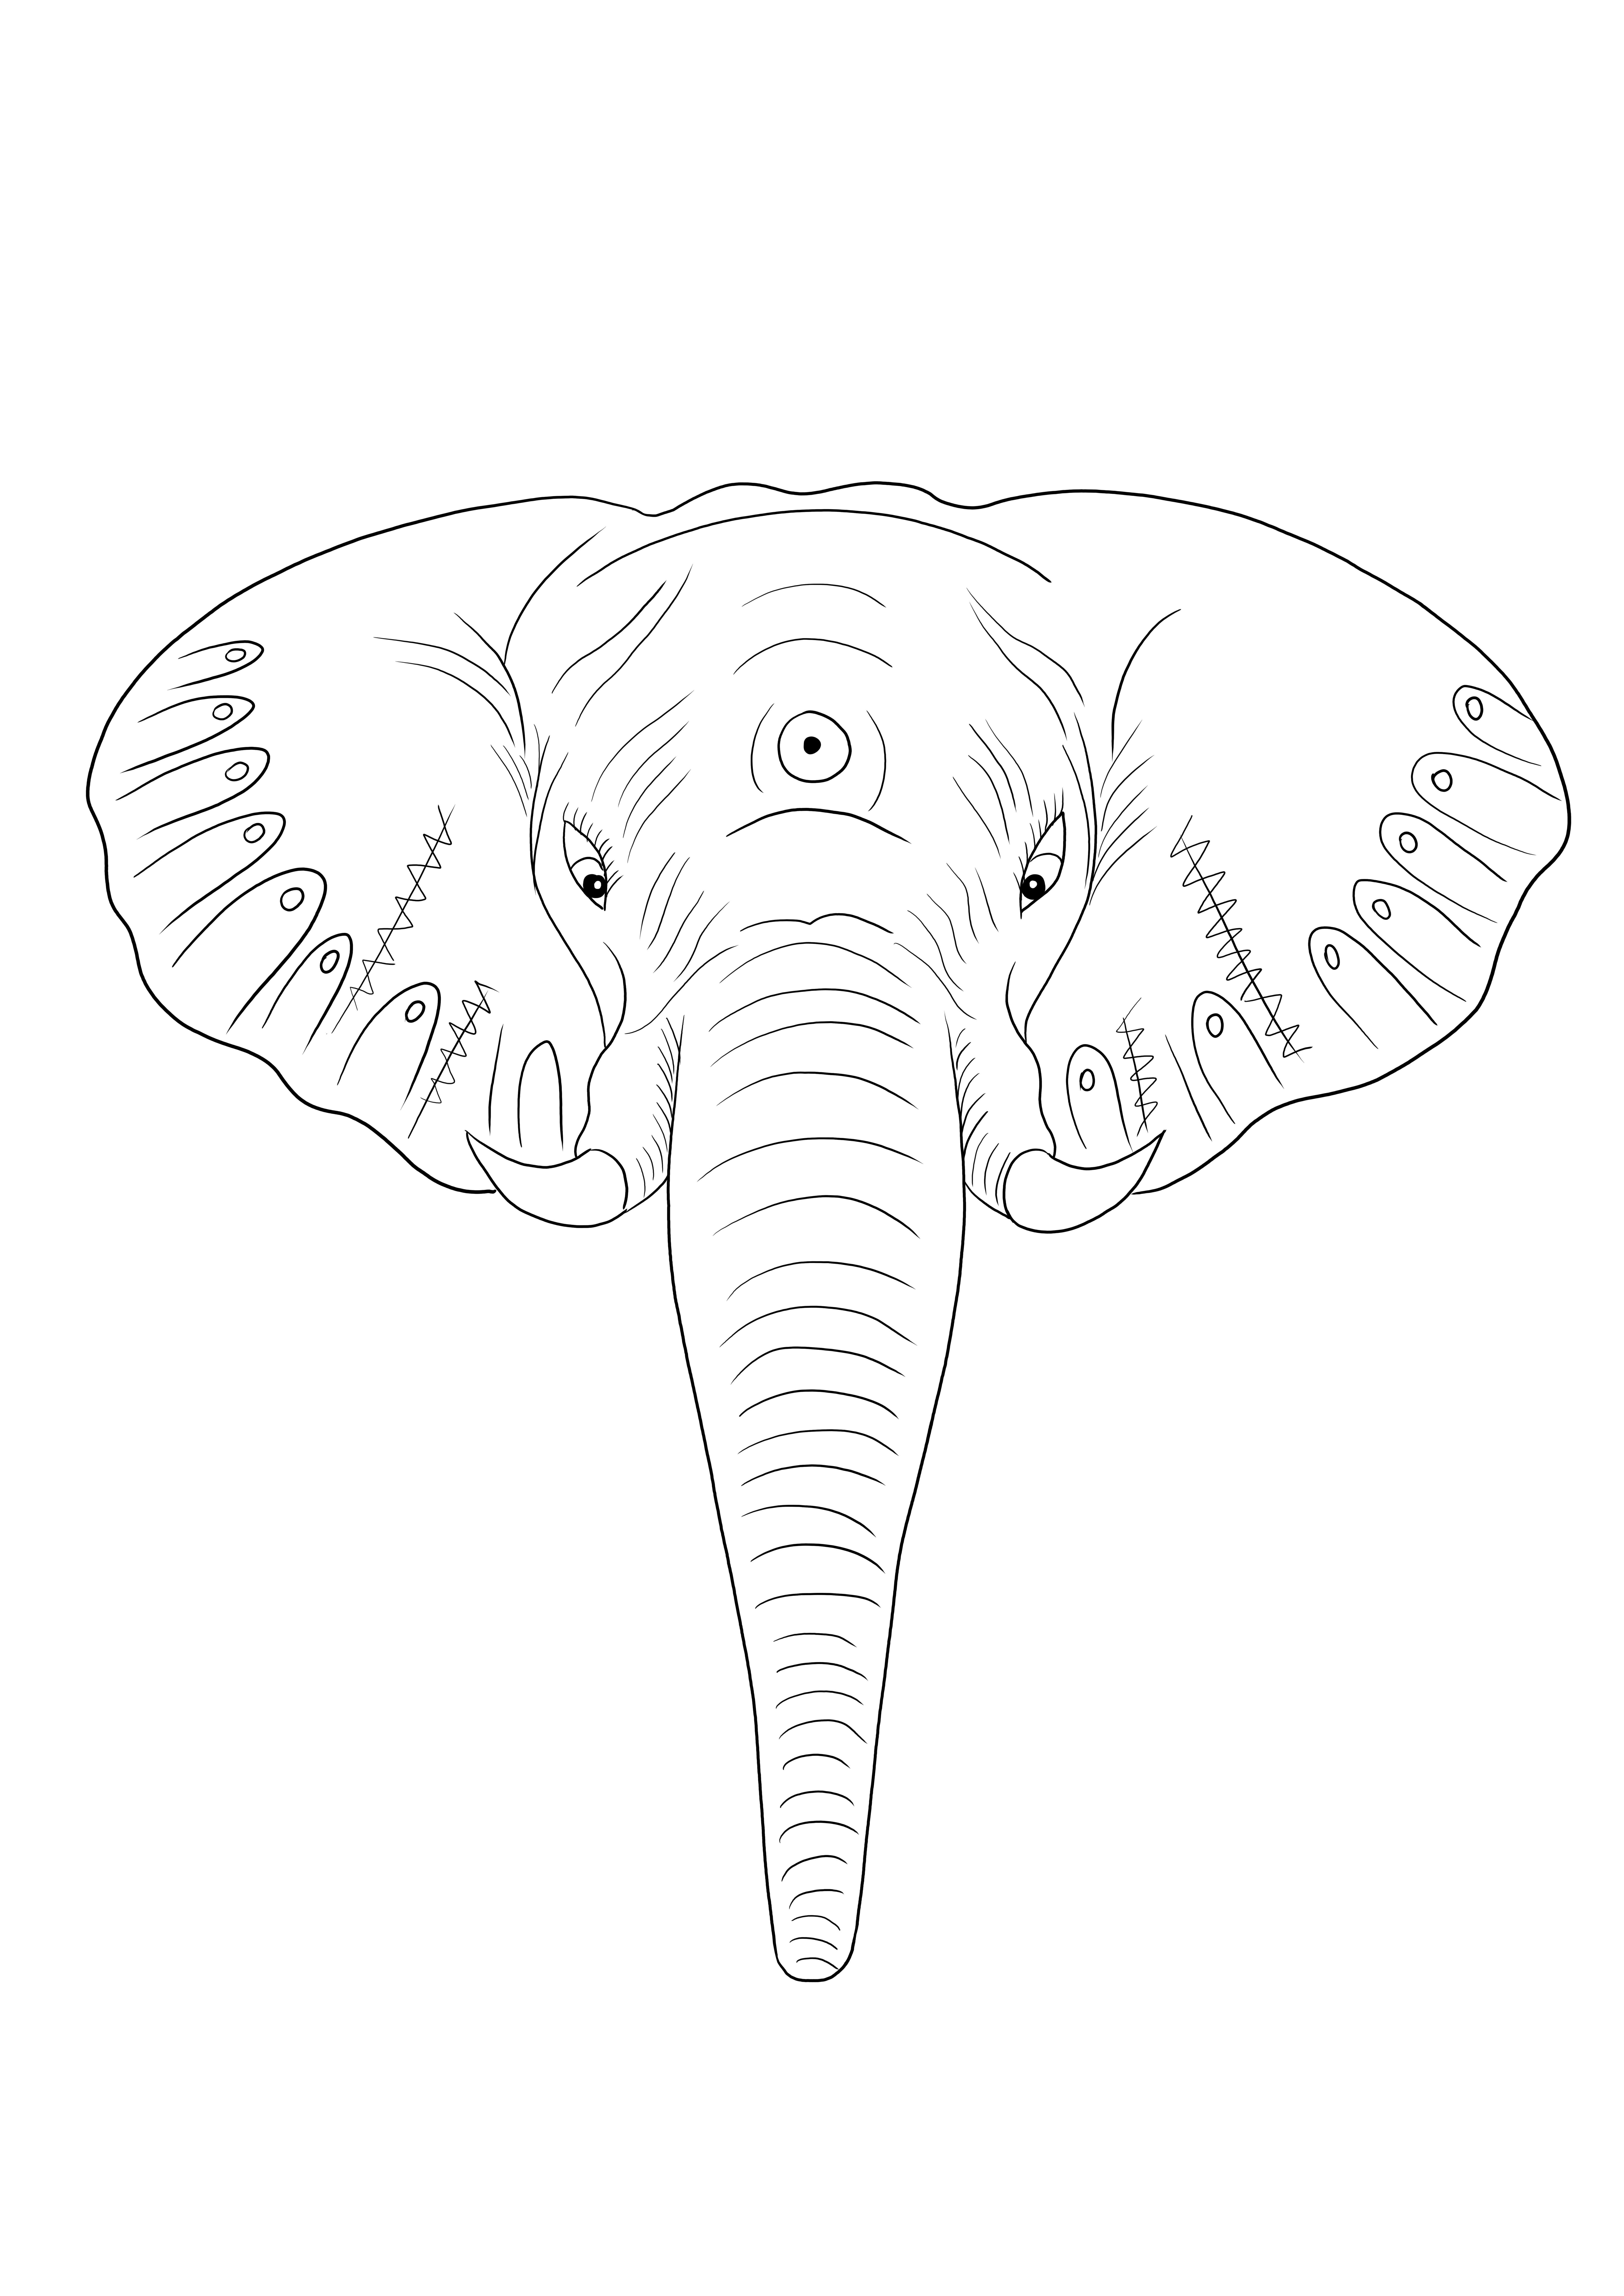 Gemakkelijke olifantenkop kleurafbeelding gratis te downloaden of op te slaan voor later kleurplaat